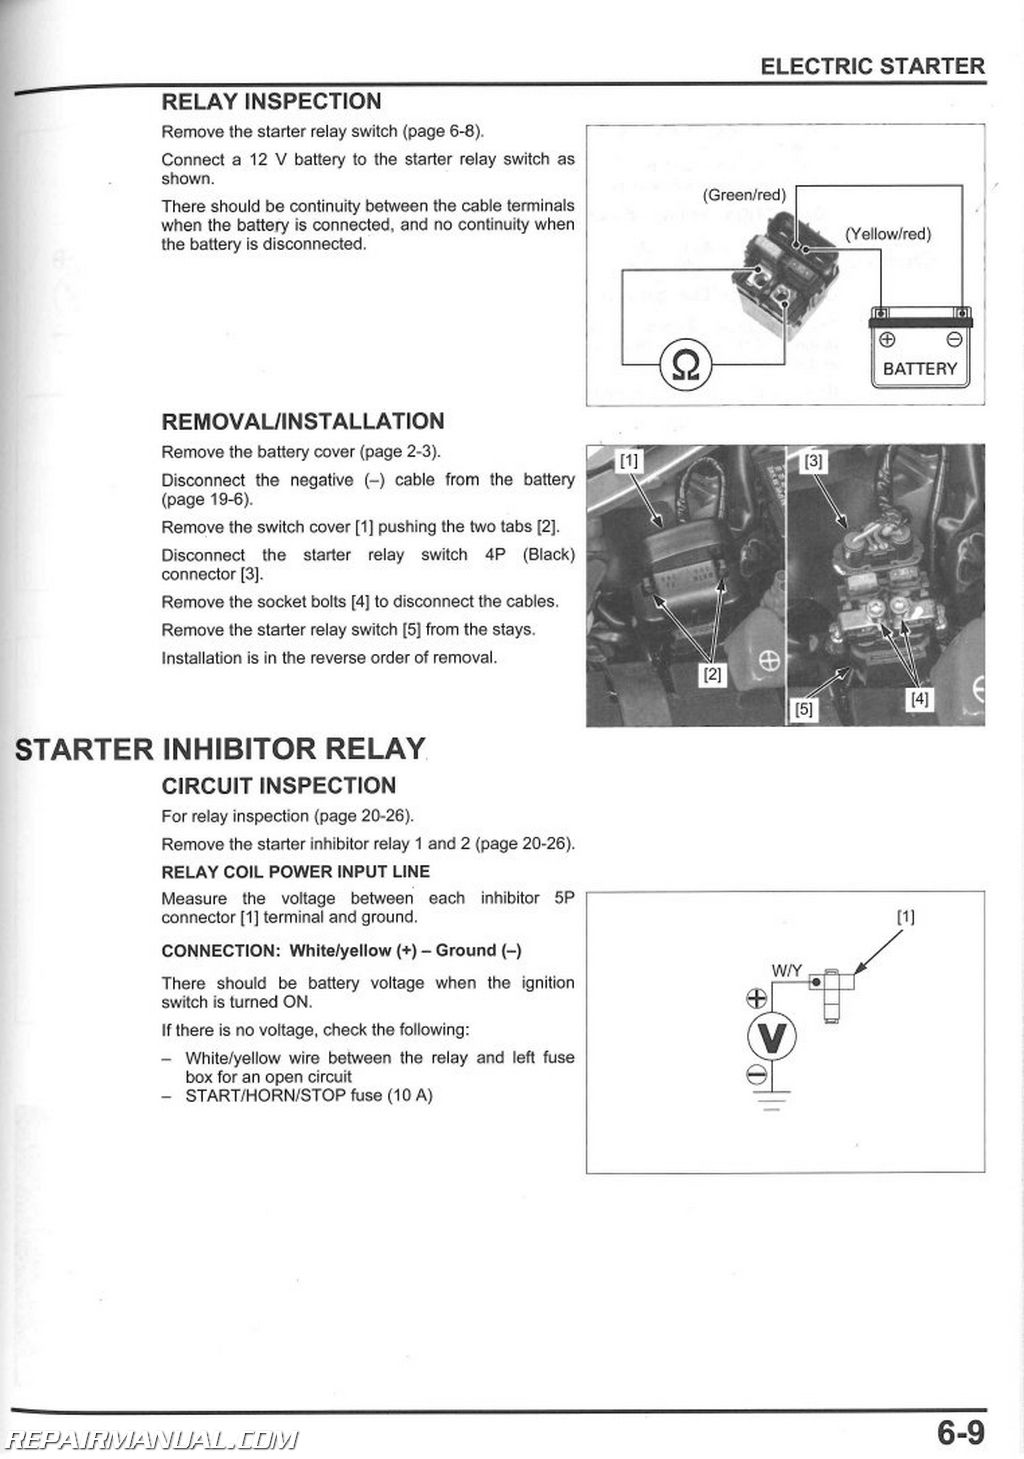 2007 Honda vfr 800 owners manual #1